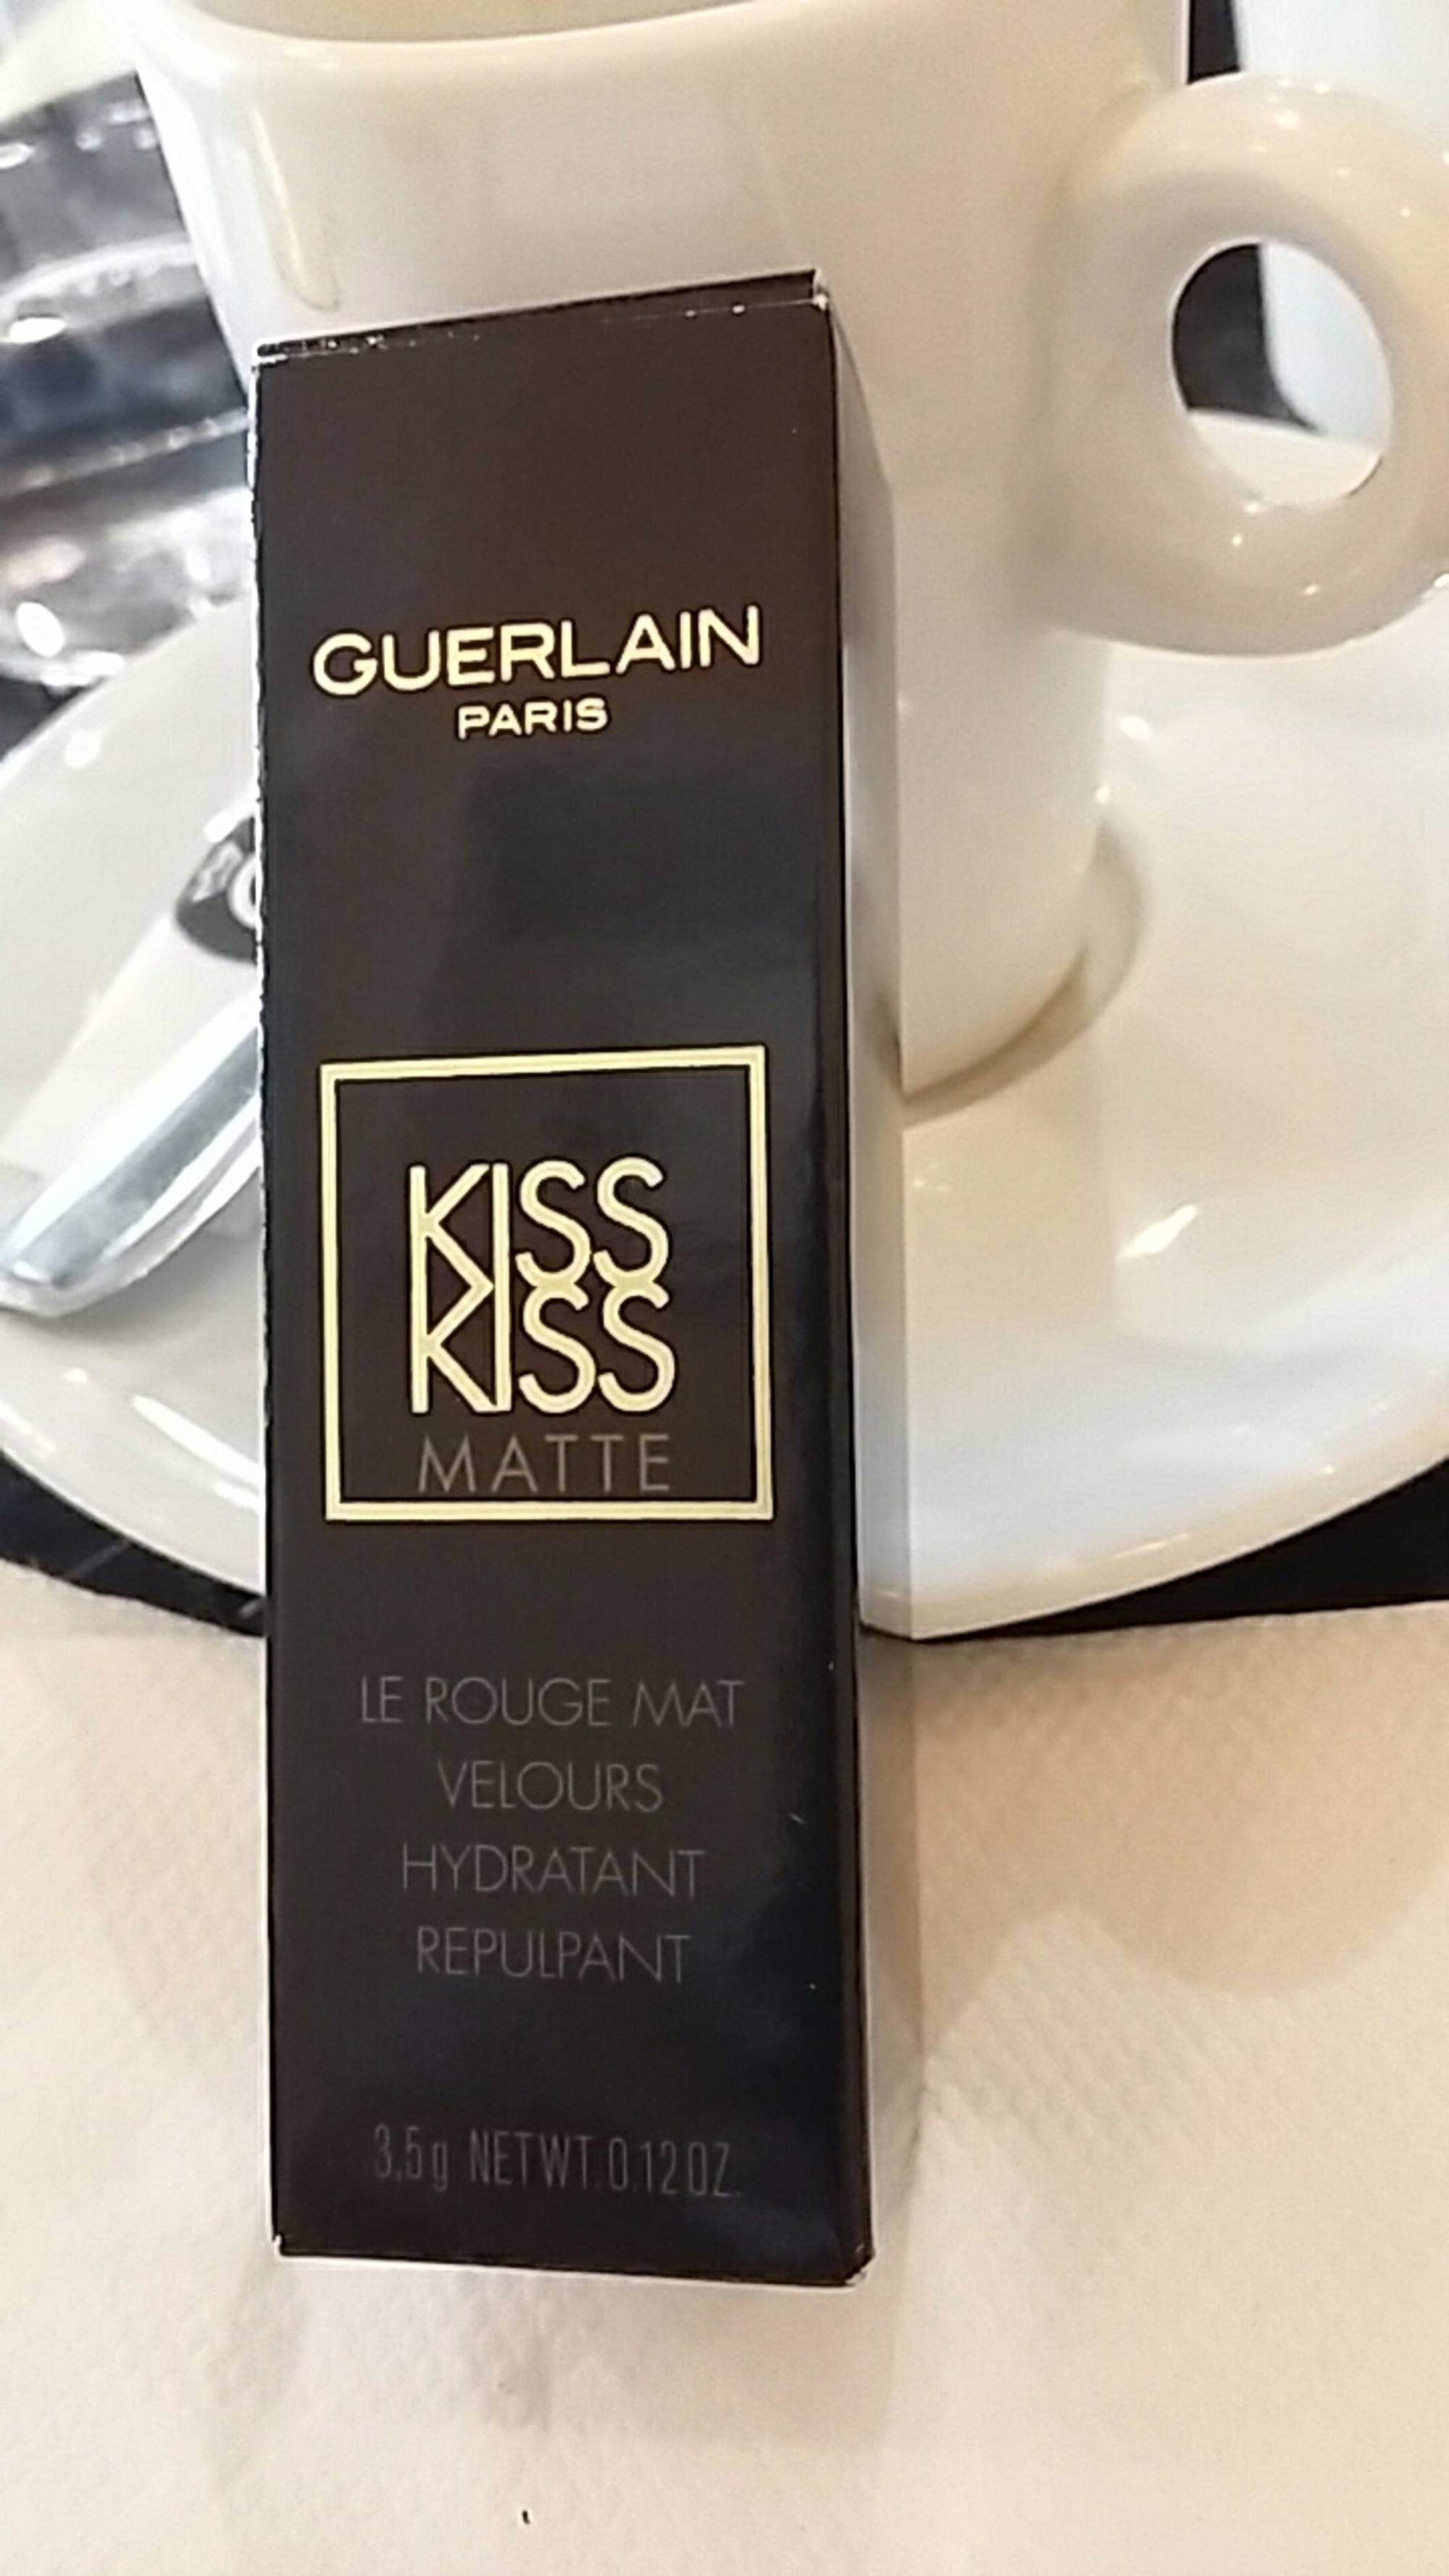 GUERLAIN PARIS - Kiss kiss matte - Le rouge mat velours hydratant repulpant